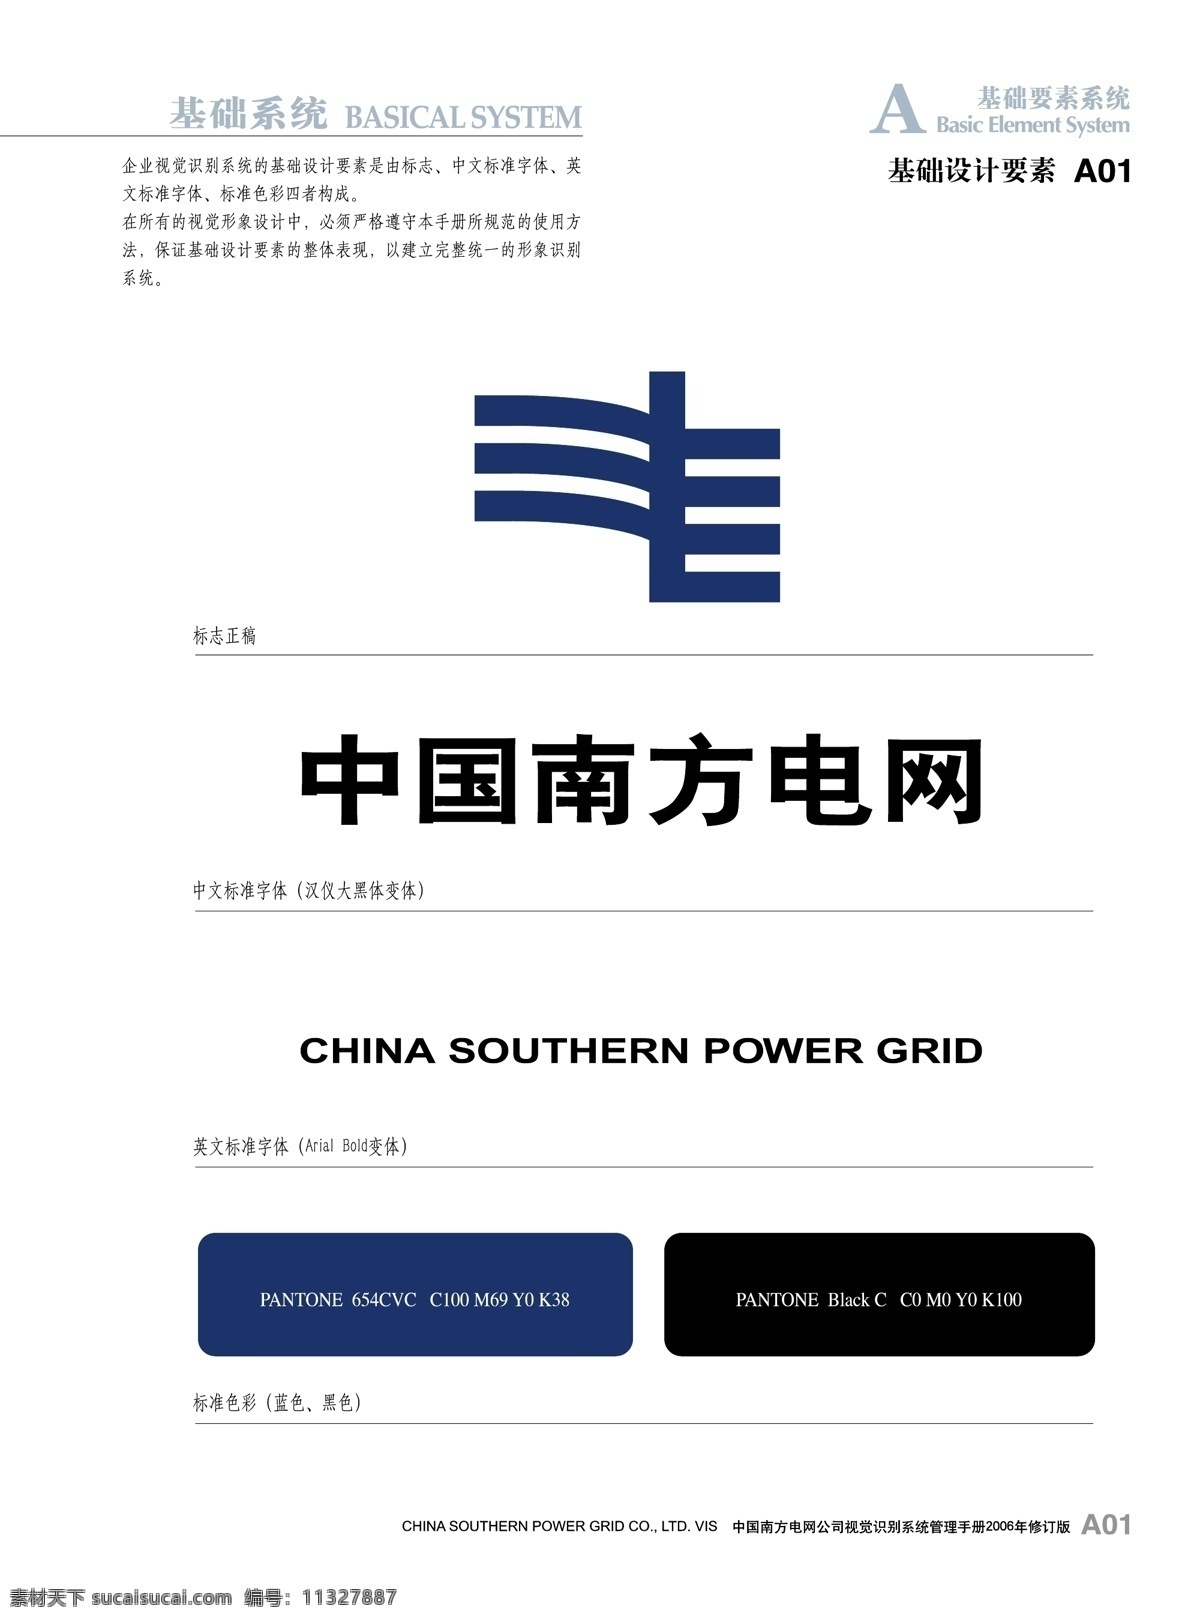 中国南方电网 基础要素系统 电网 标识 企业 vi logo 标志图标 标志